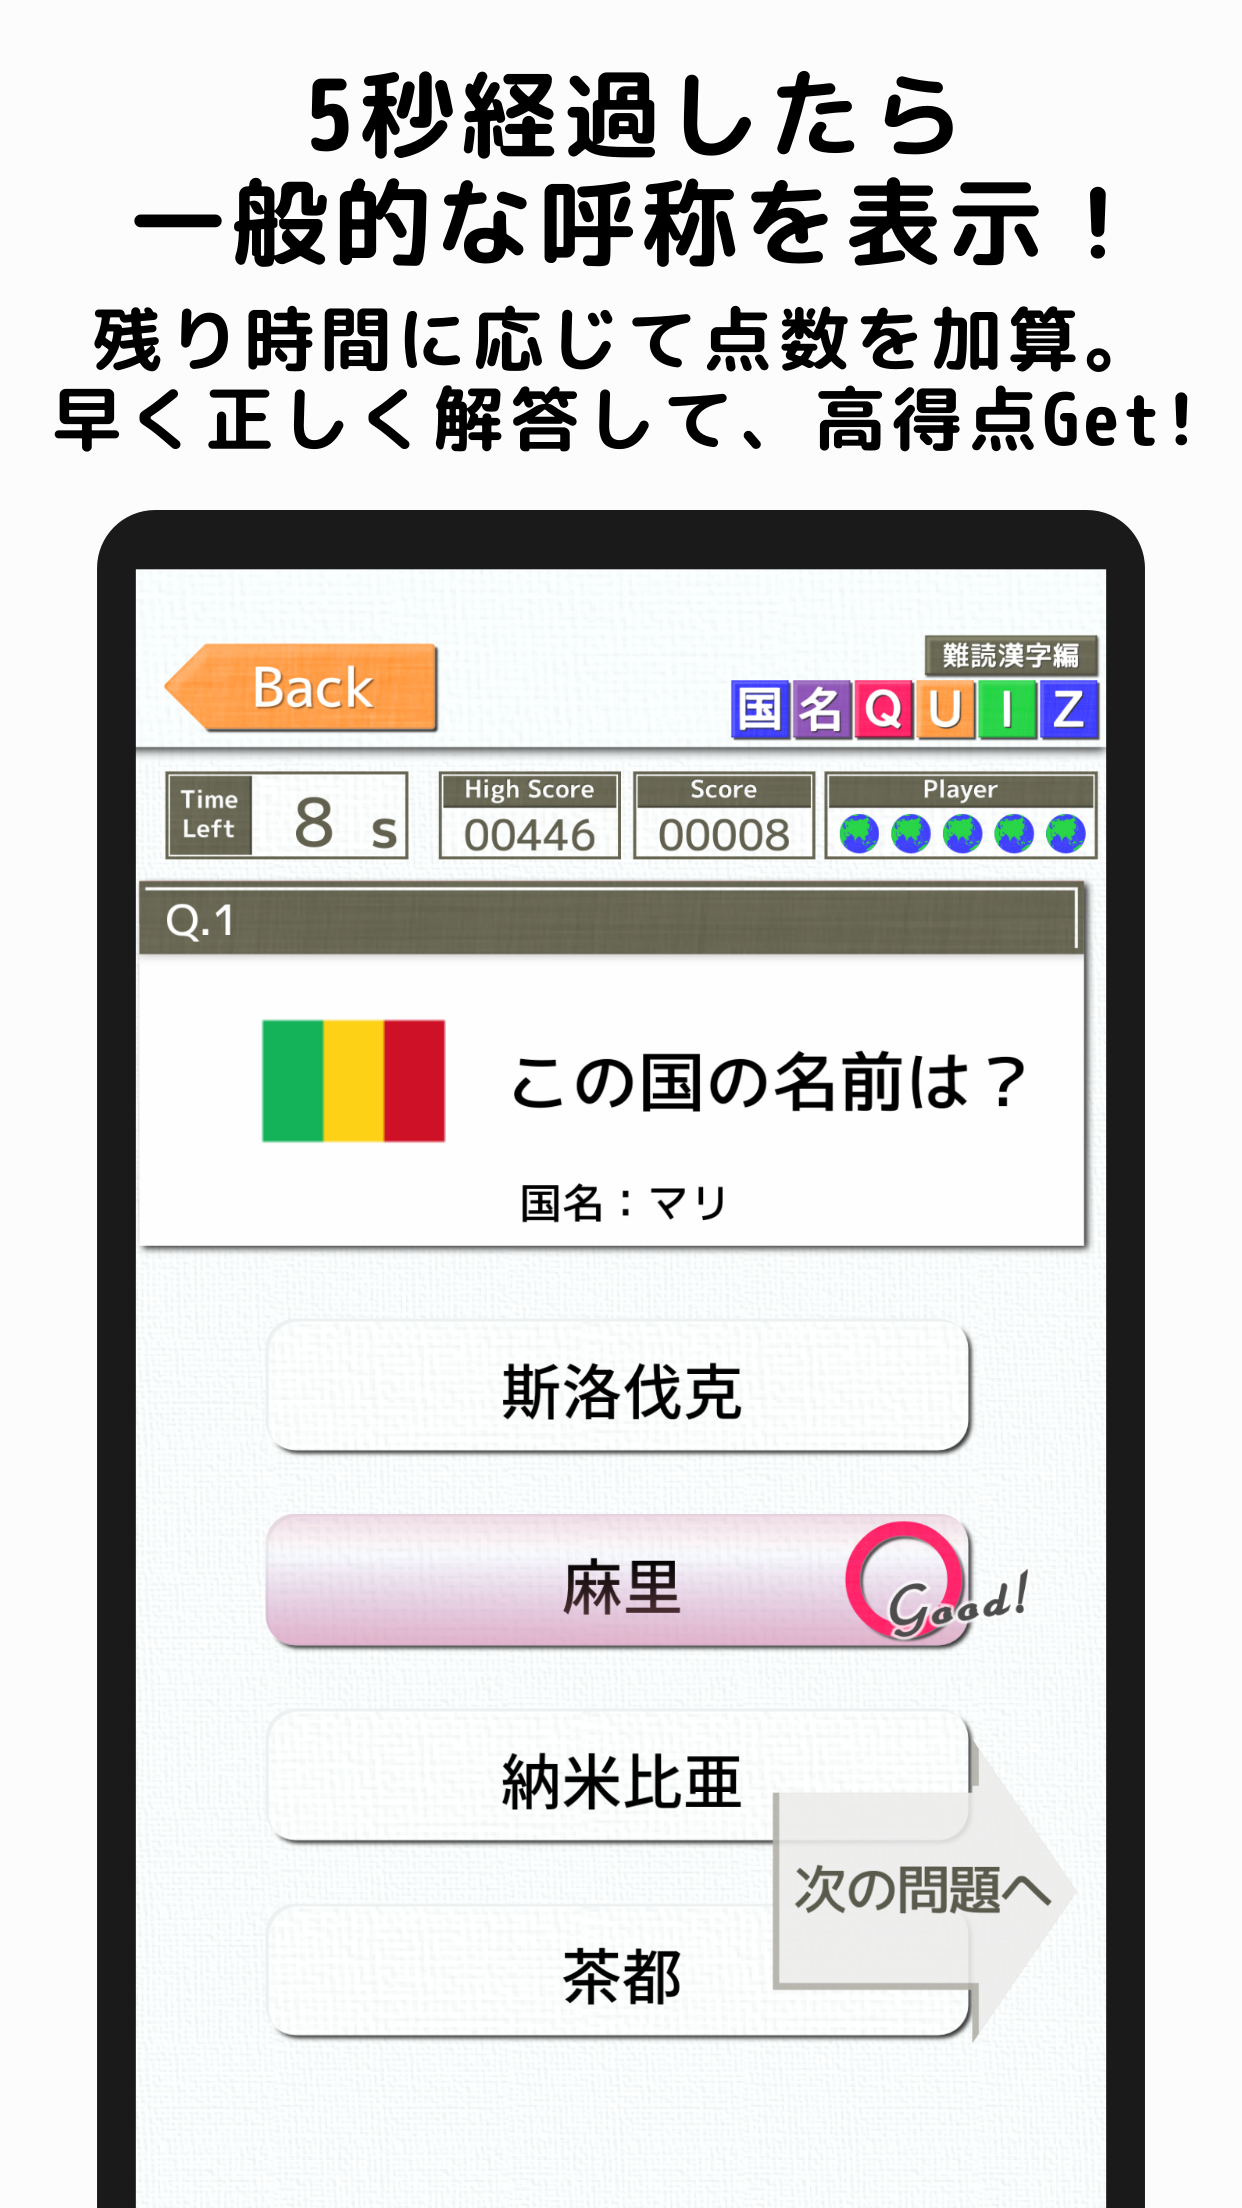 国名Quiz 難読漢字編 スクリーンショット3 5秒経過したら一般的な呼称を表示！残り時間に応じて点数を加算。早く正しく解答して、高得点Get！